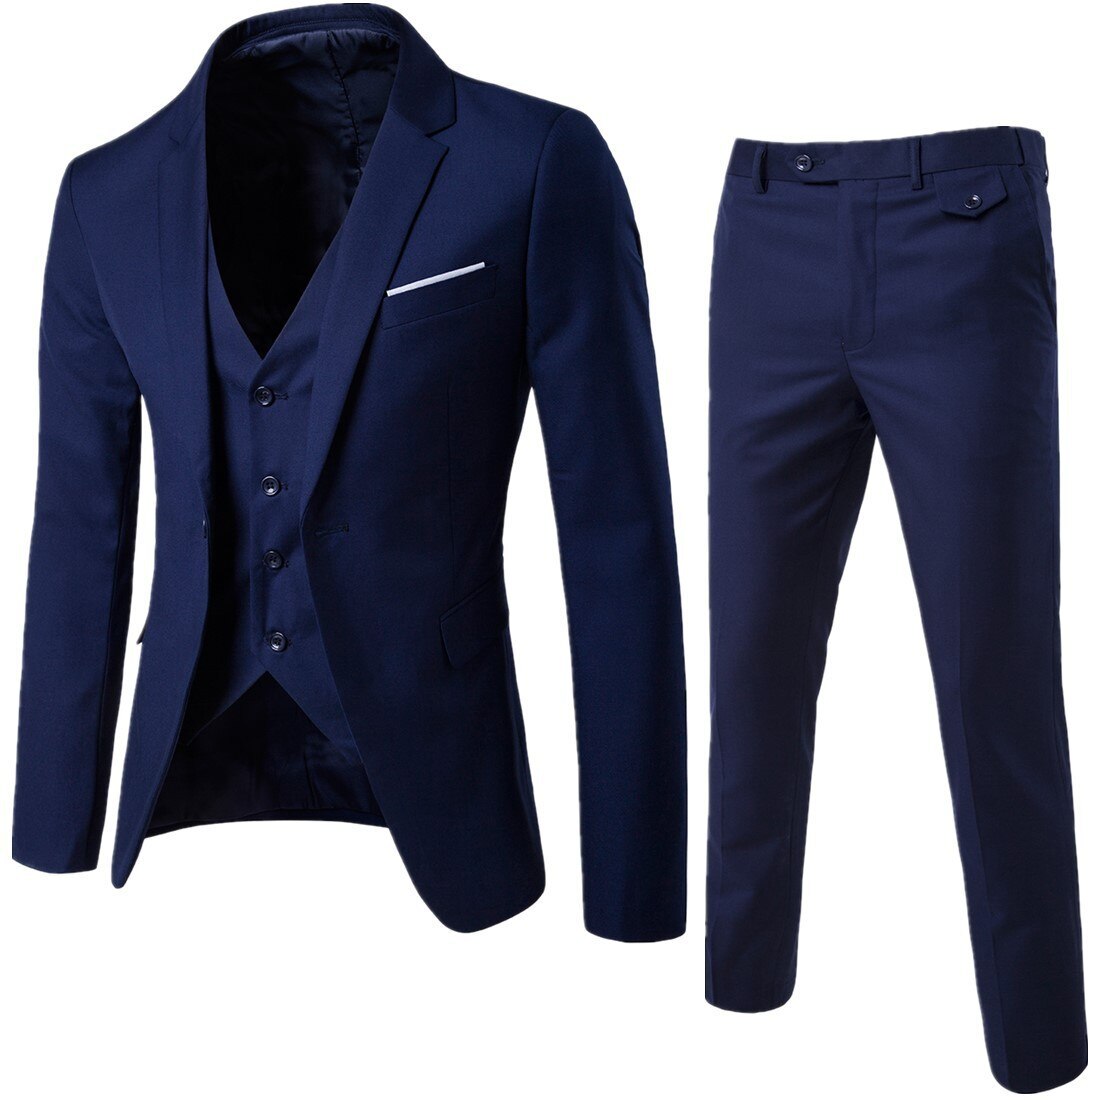 Men-Classic-3piece-Set-Suit-Wedding-Suits-for-Men-Slim-Suit-Jacket-Pant-Vest-Suit-for-2.jpg